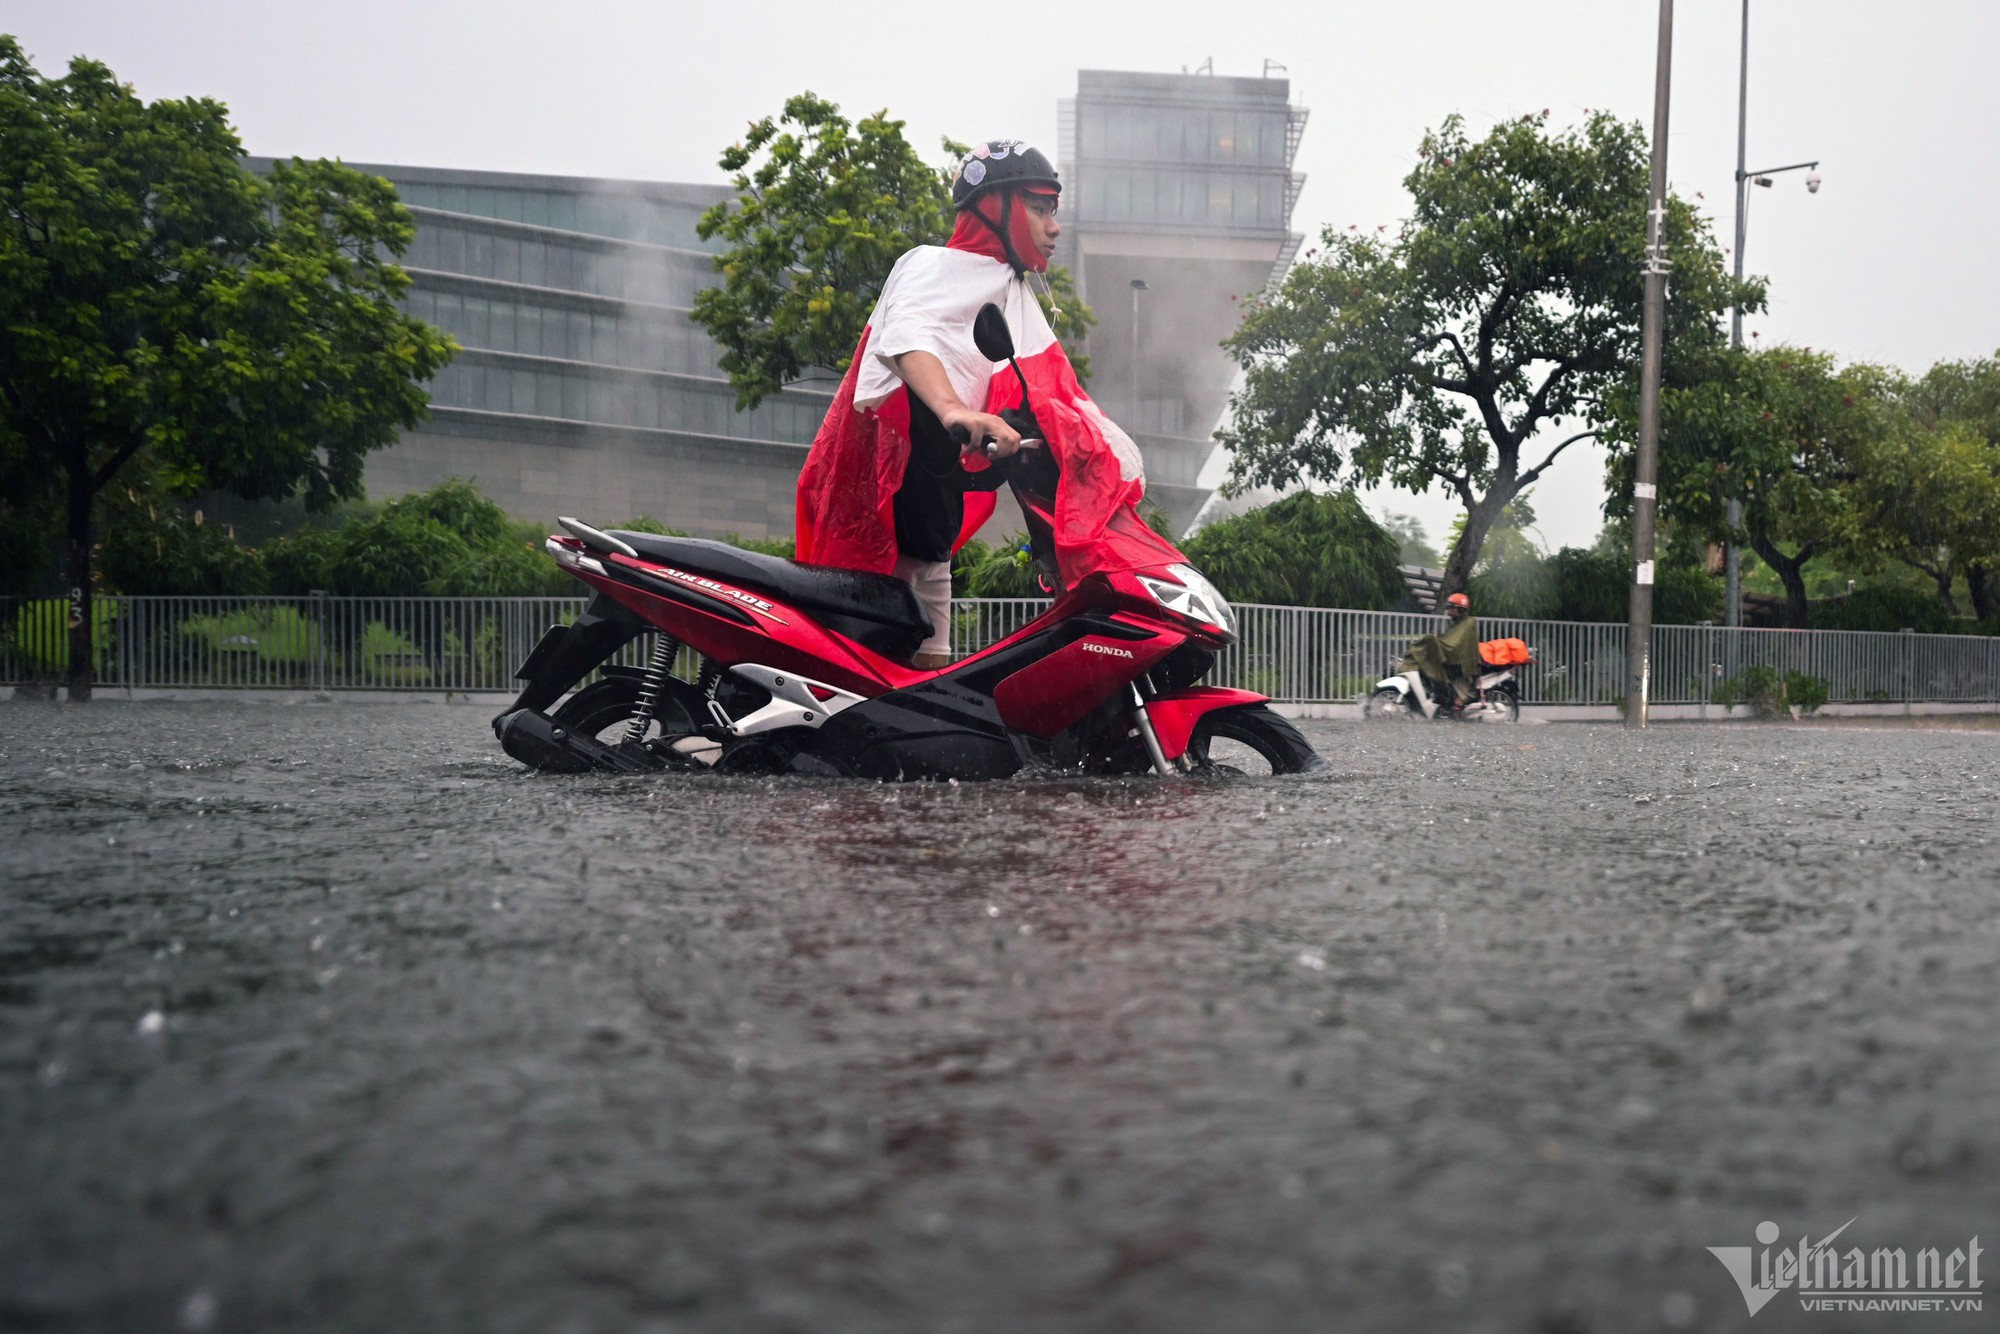 Hà Nội mưa lớn, người đi xe máy chới với giữa dòng nước ngập - Ảnh 1.